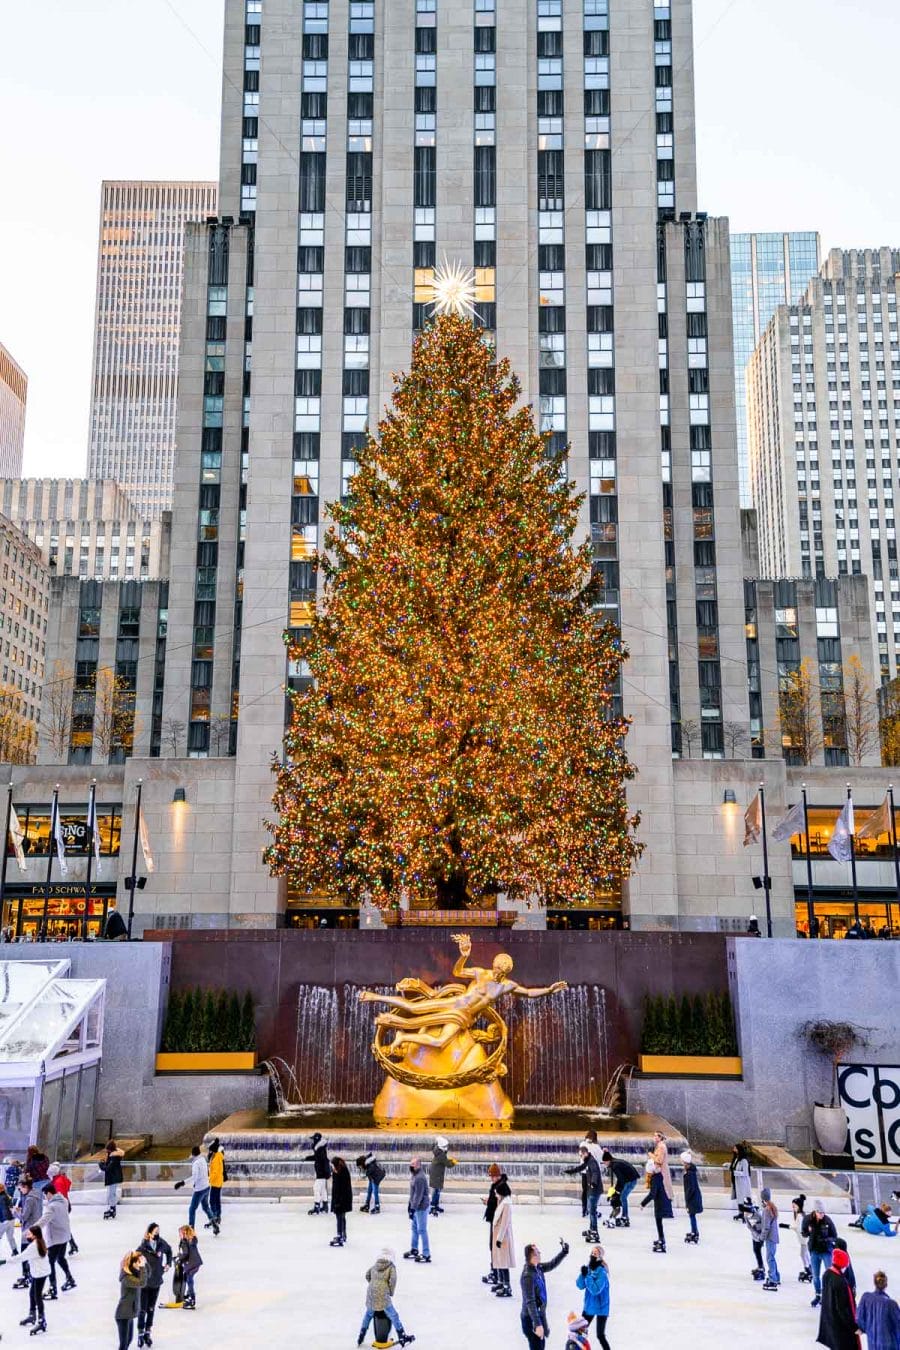 Rockefeller Center Christmas Tree in New York